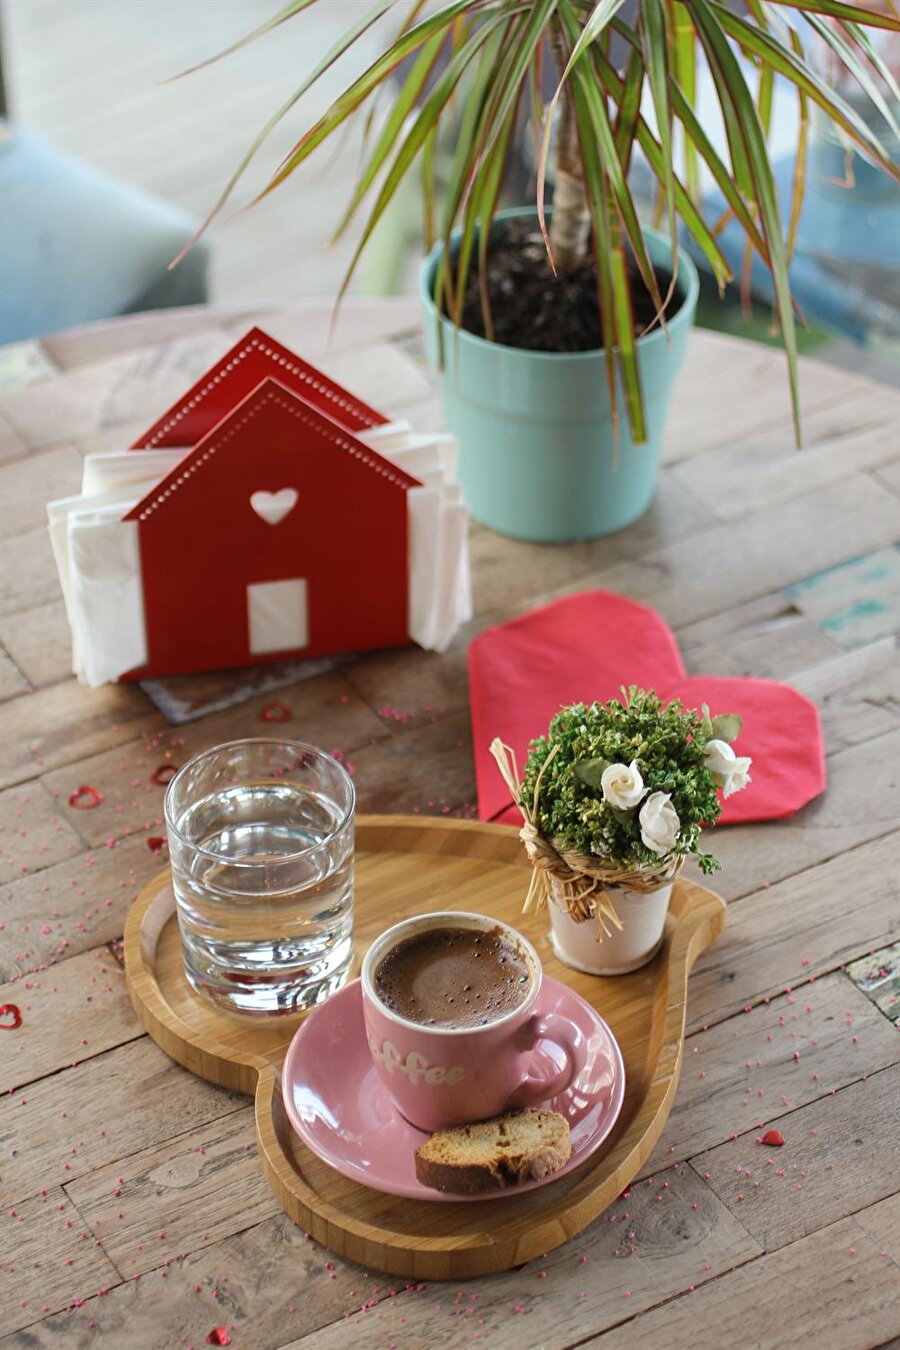 Kahve sunumu

                                    
                                    Size sıradan bir fincanda, çiçekler olmadan kahve ikram edeceğini mi sandınız?
                                
                                